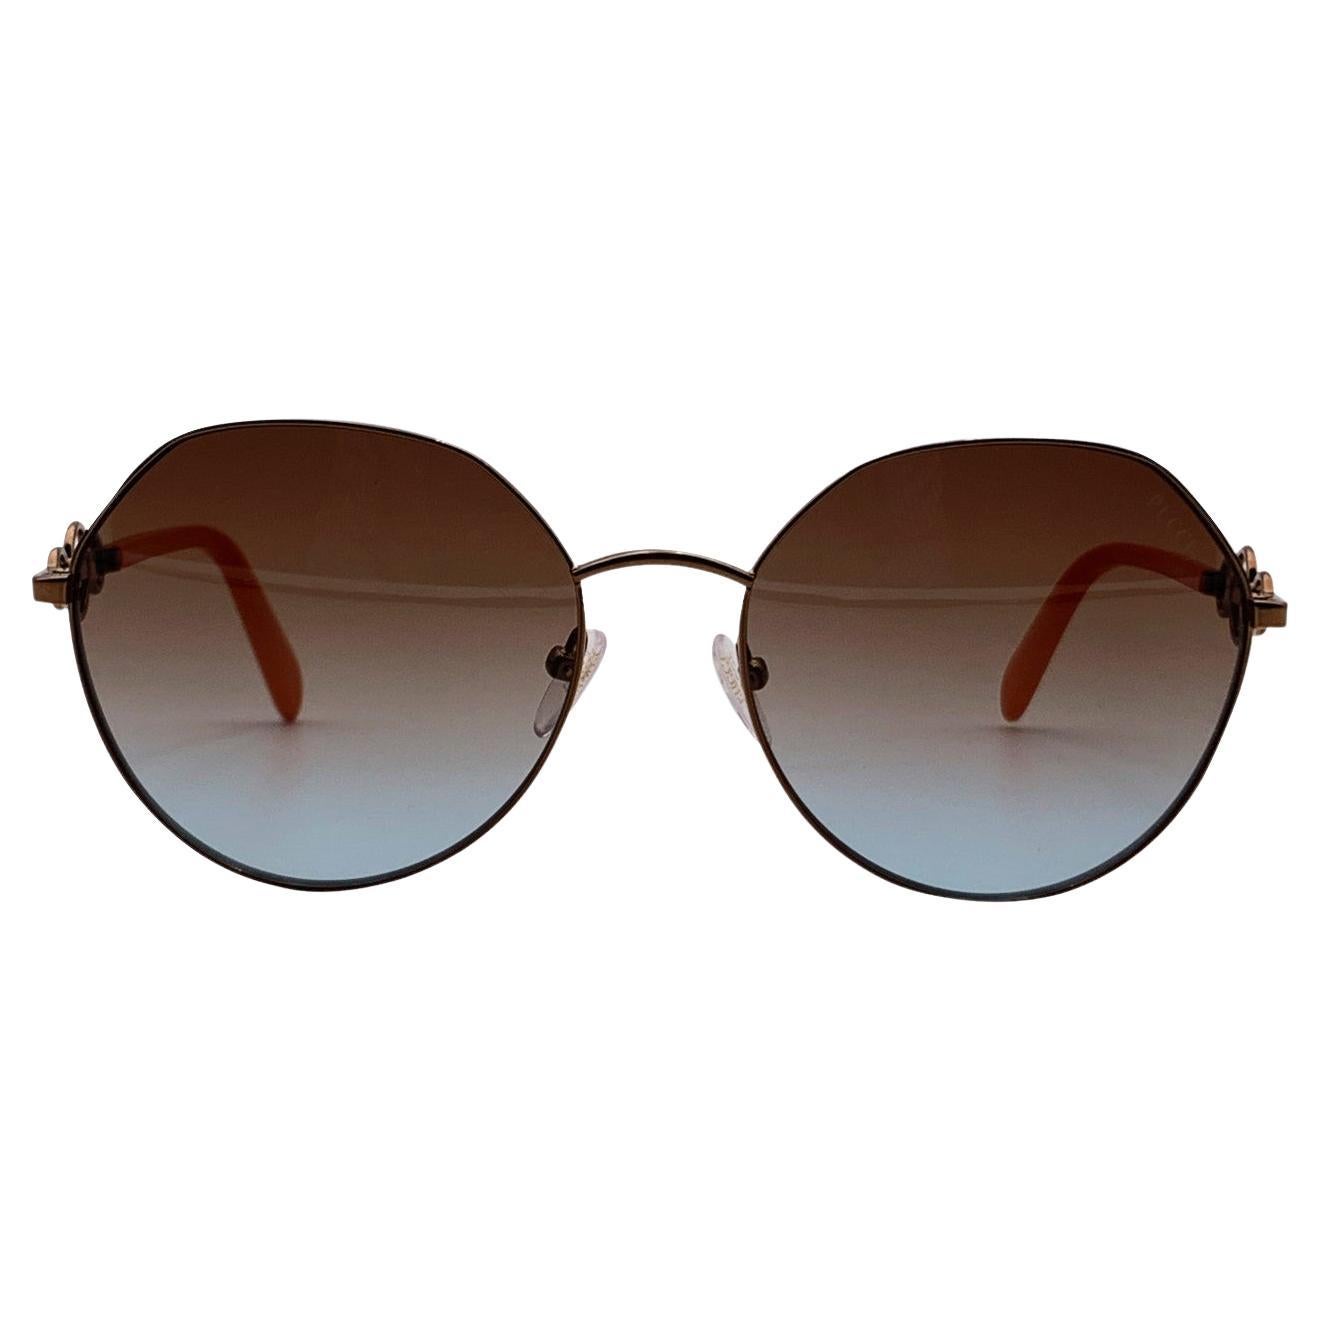 Emilio Pucci New Women Bronze Sunglasses EP0150 36F 59-18 140 mm